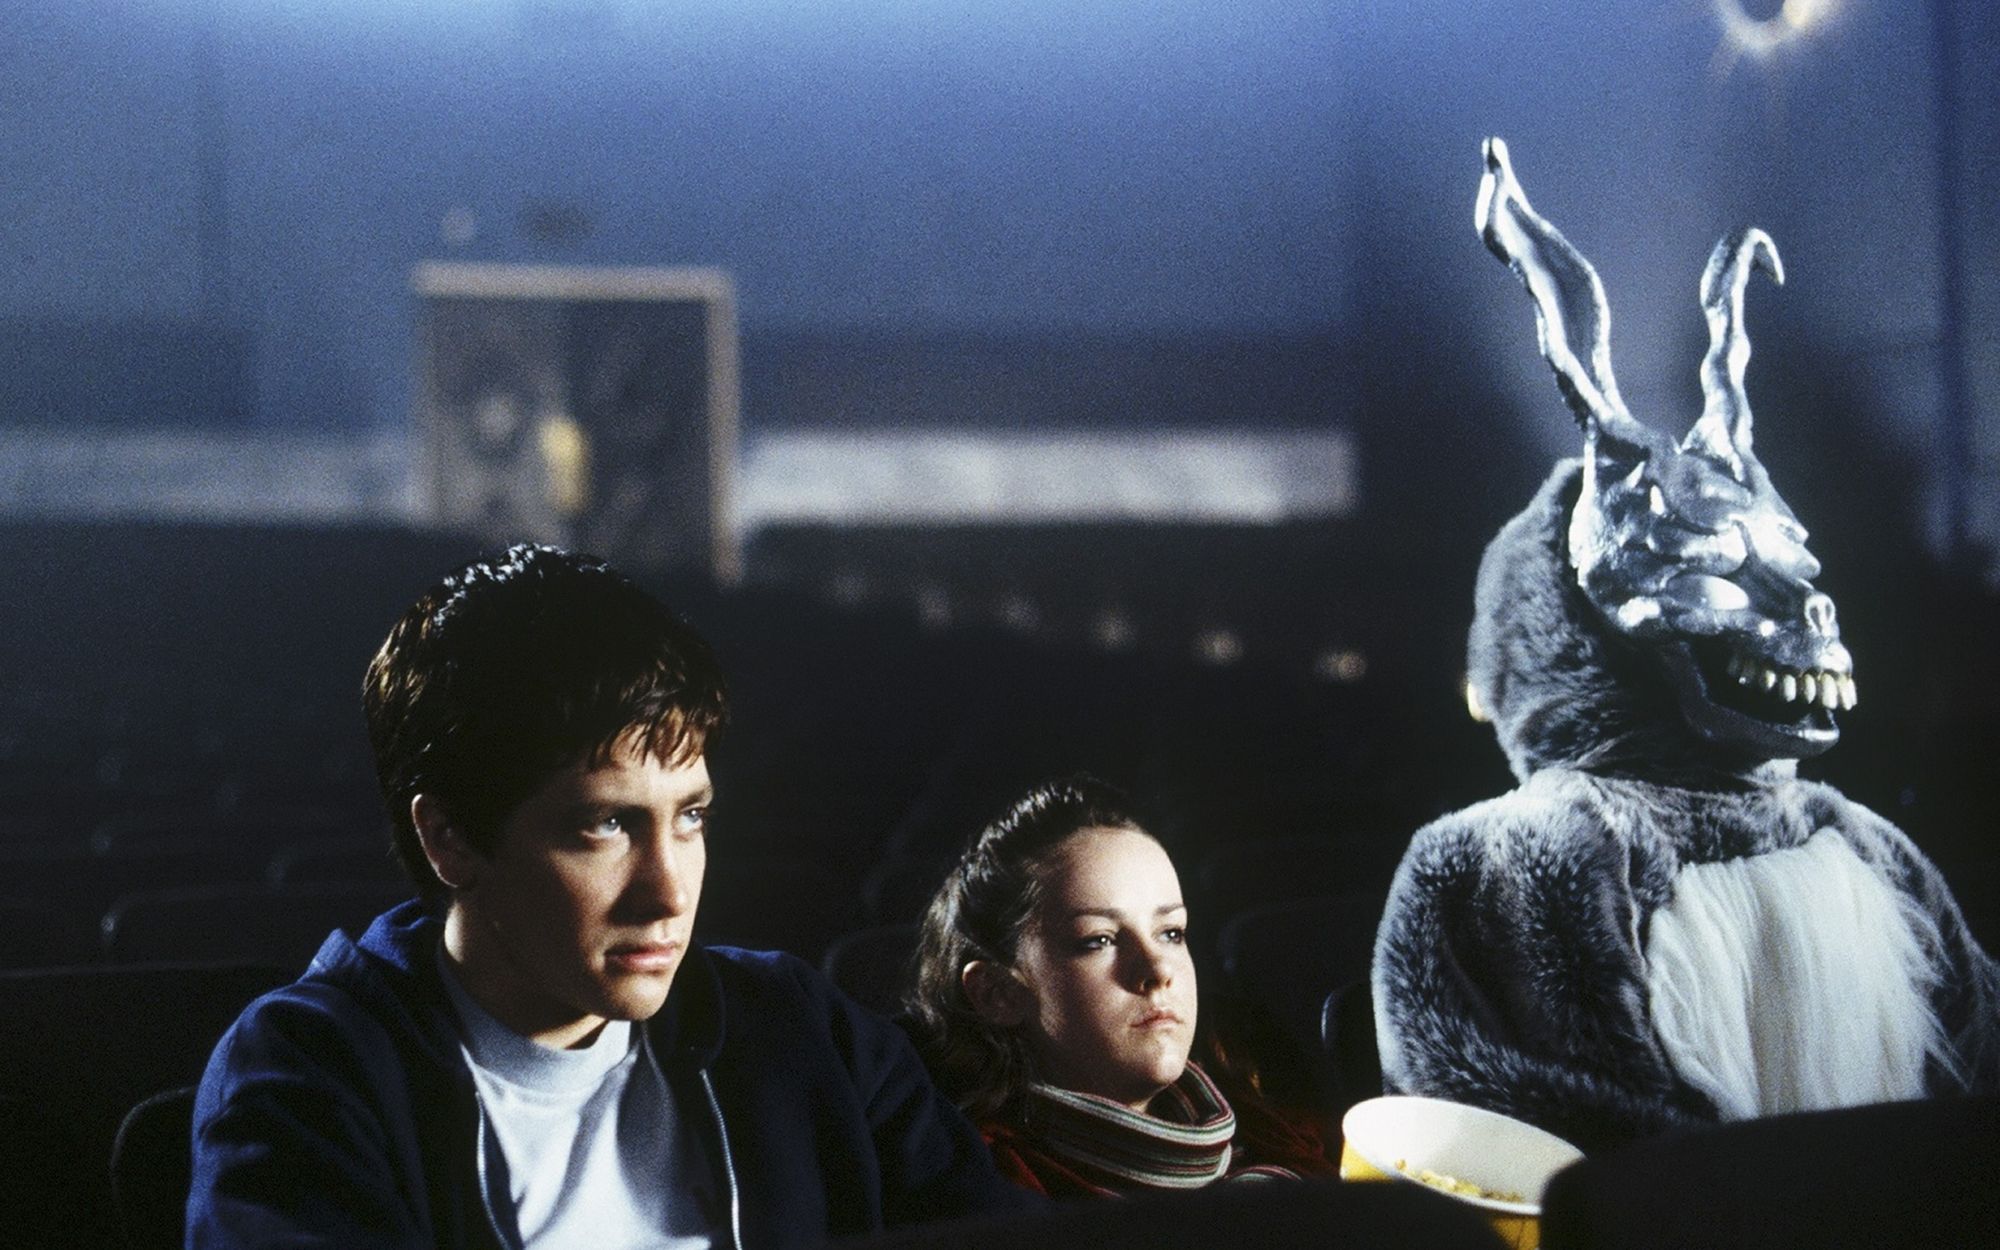 В зале кинотеатра сидят парень, девушка и человек в костюме кролика и маске скелета